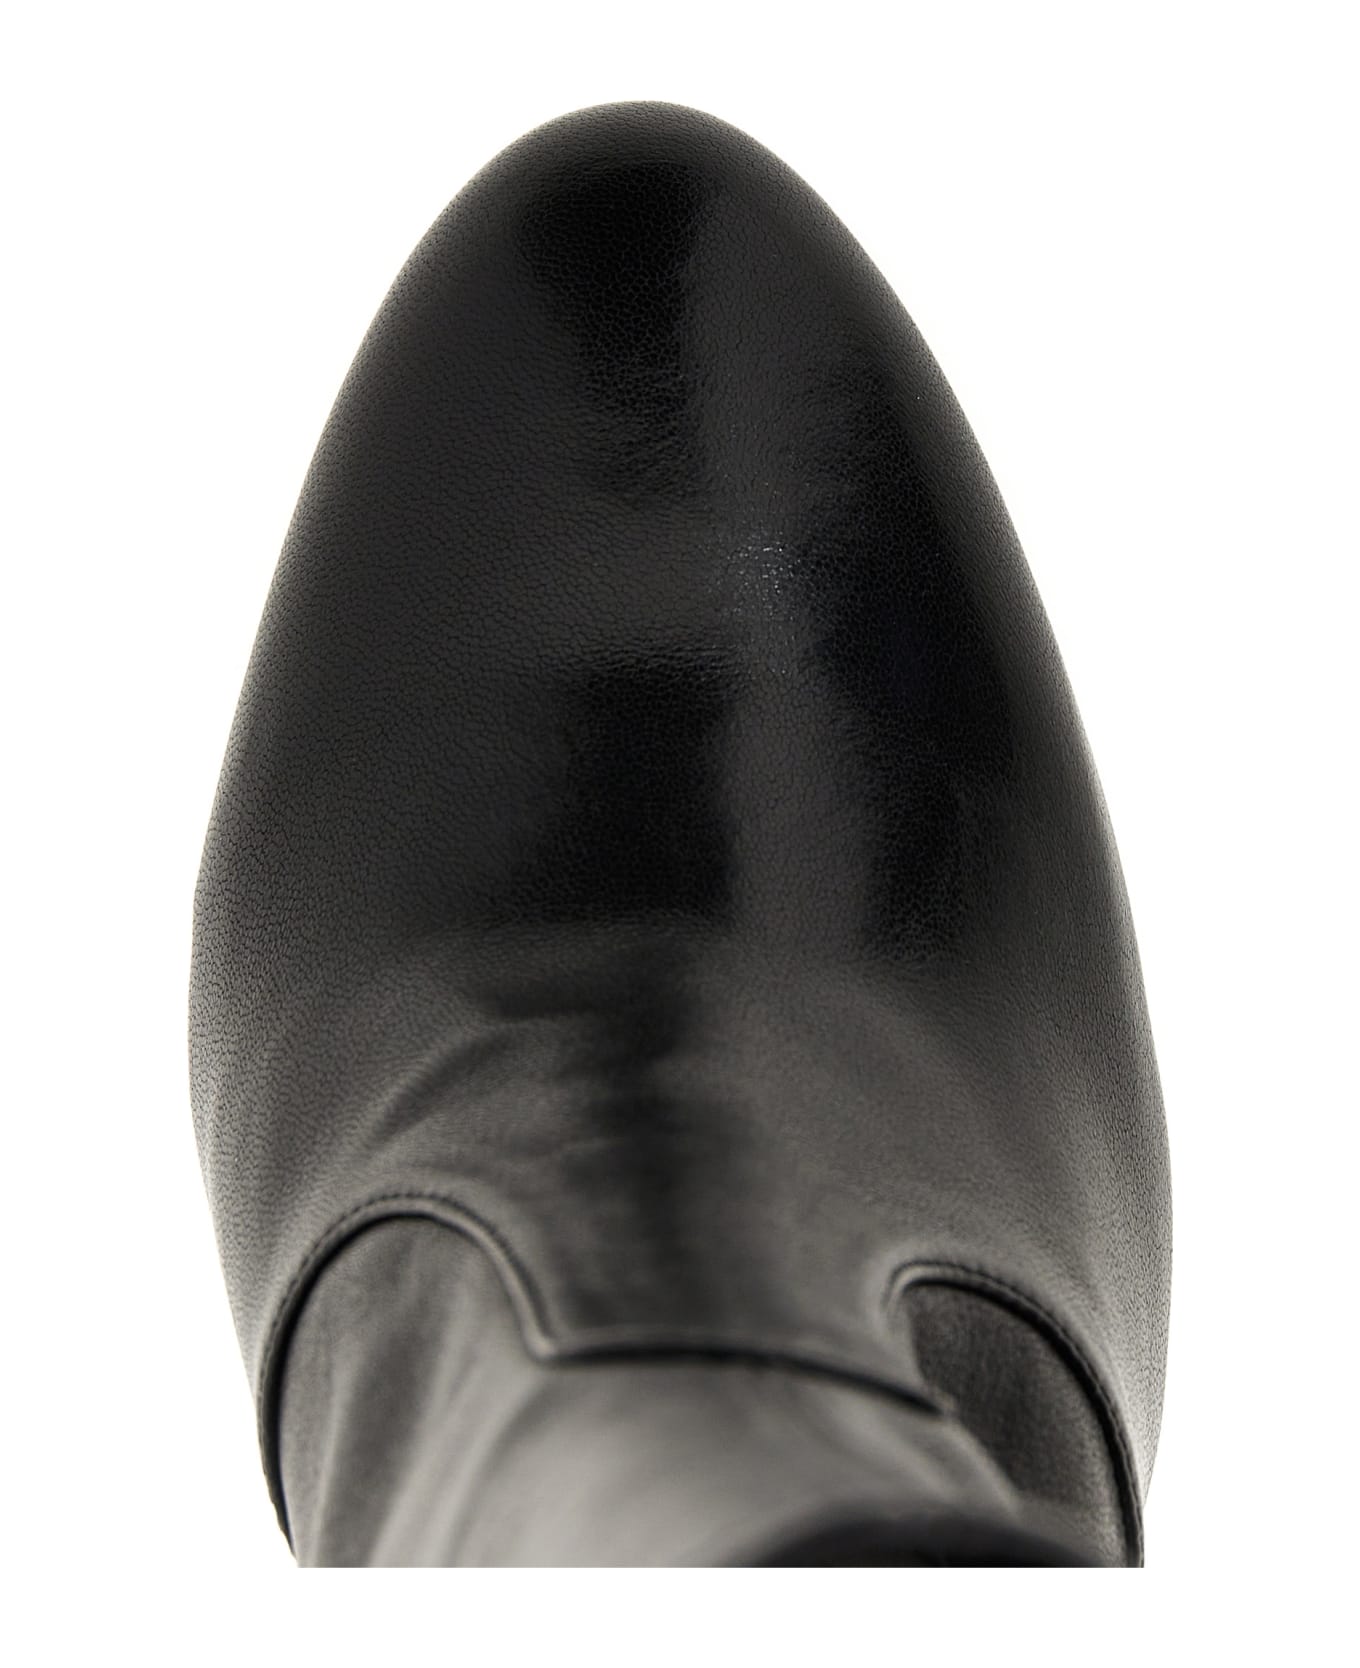 Stuart Weitzman Lux Curl Ankle Boots - Black  